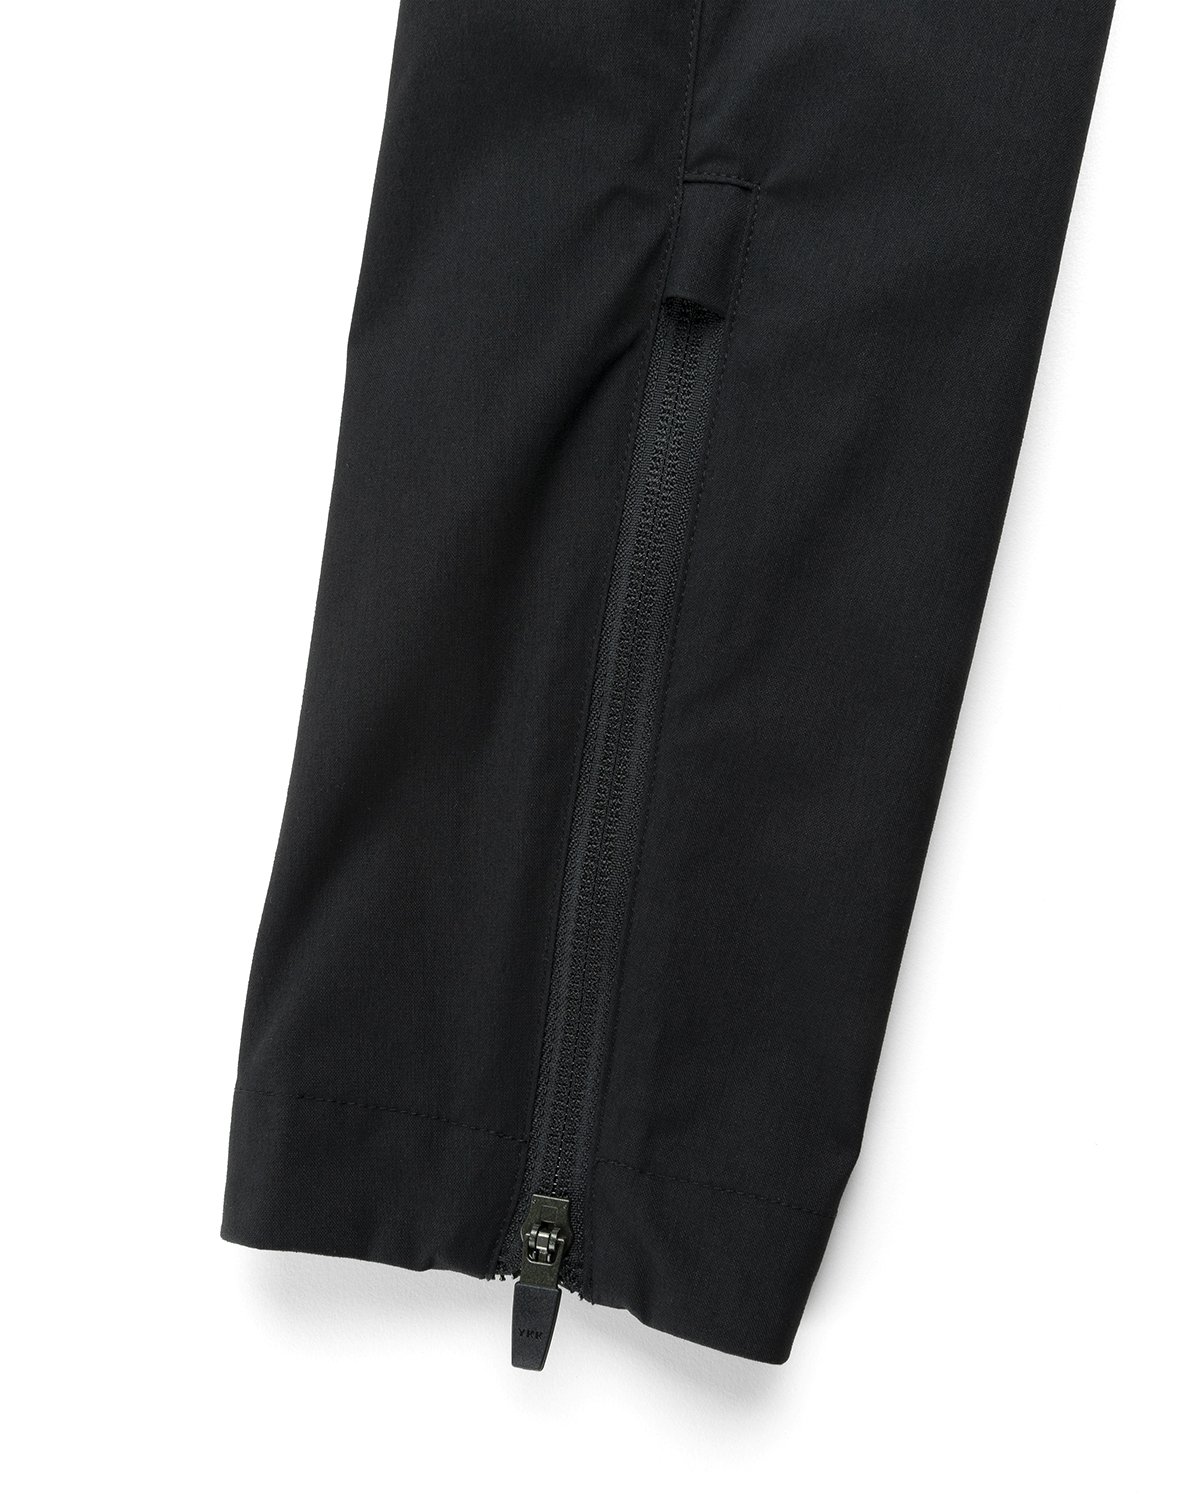 ACRONYM - P10-E Pant Black - Clothing - Black - Image 4